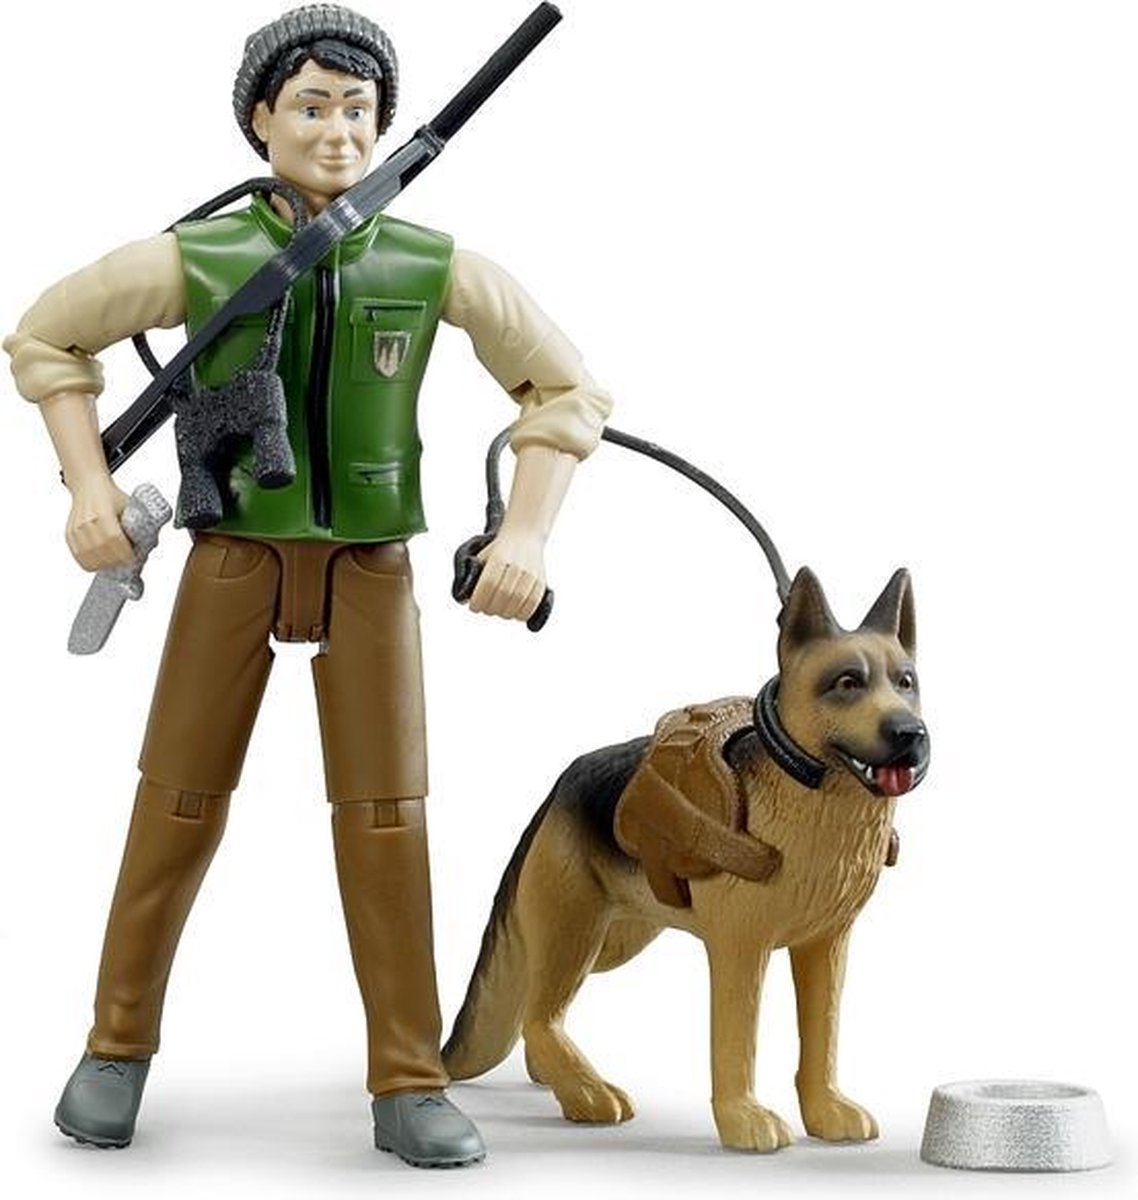   Boswachter met hond en uitrusting - 62660